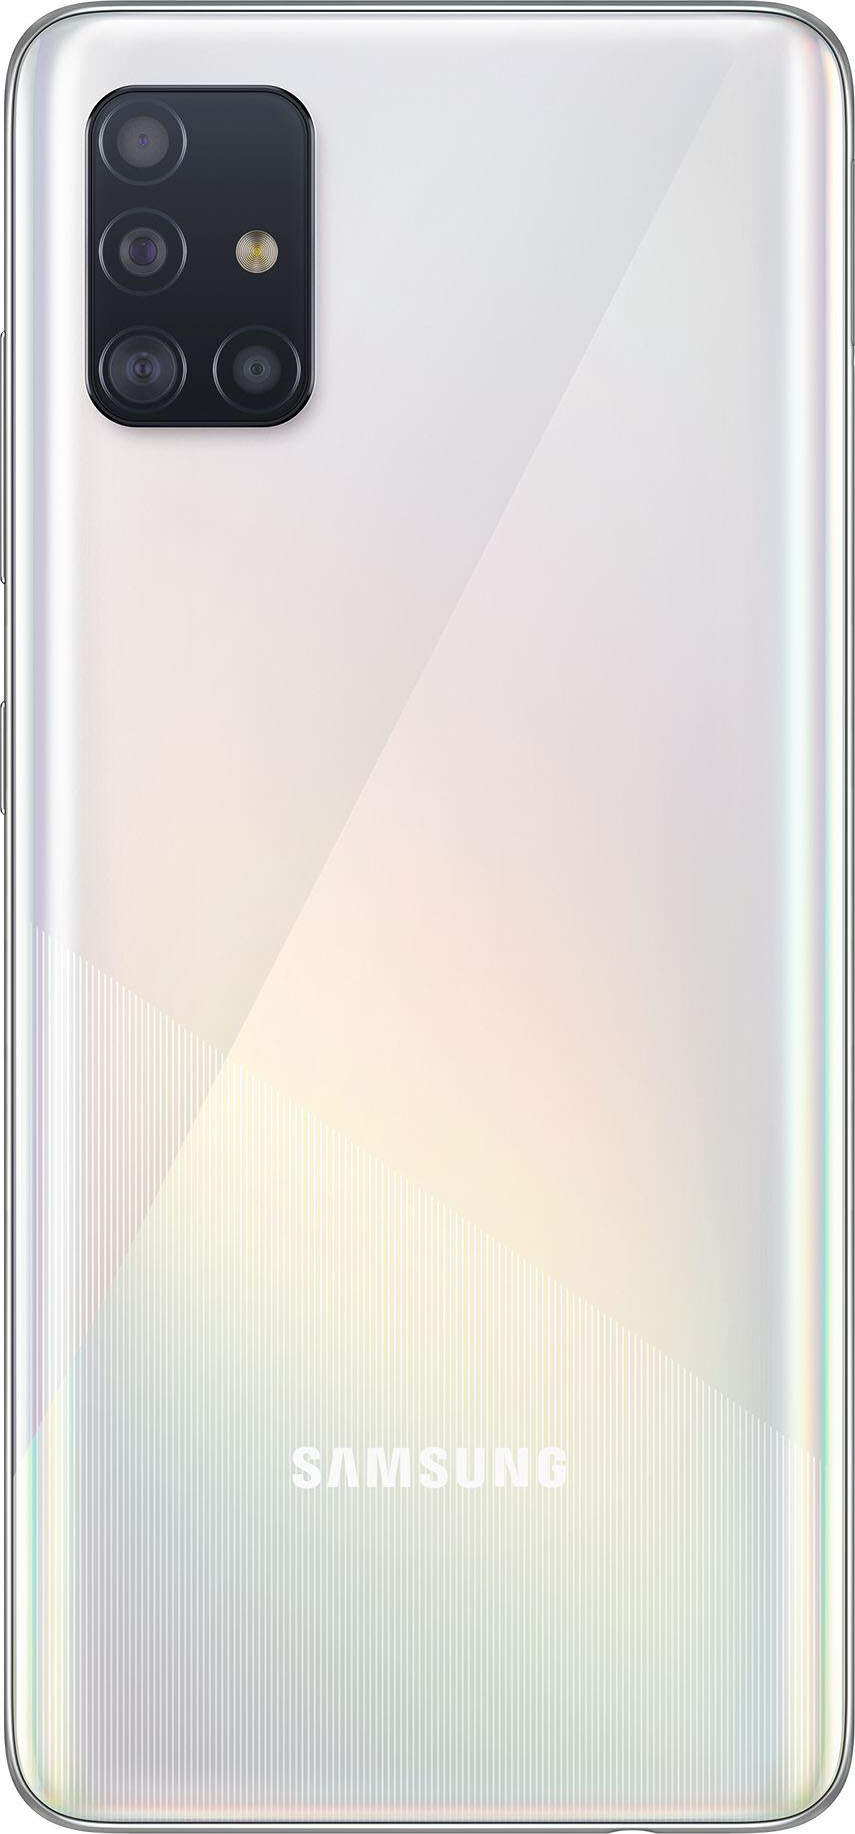 Смартфон Samsung Galaxy A51 4/64GB (ЕАС) Prism Crush White (Белый)